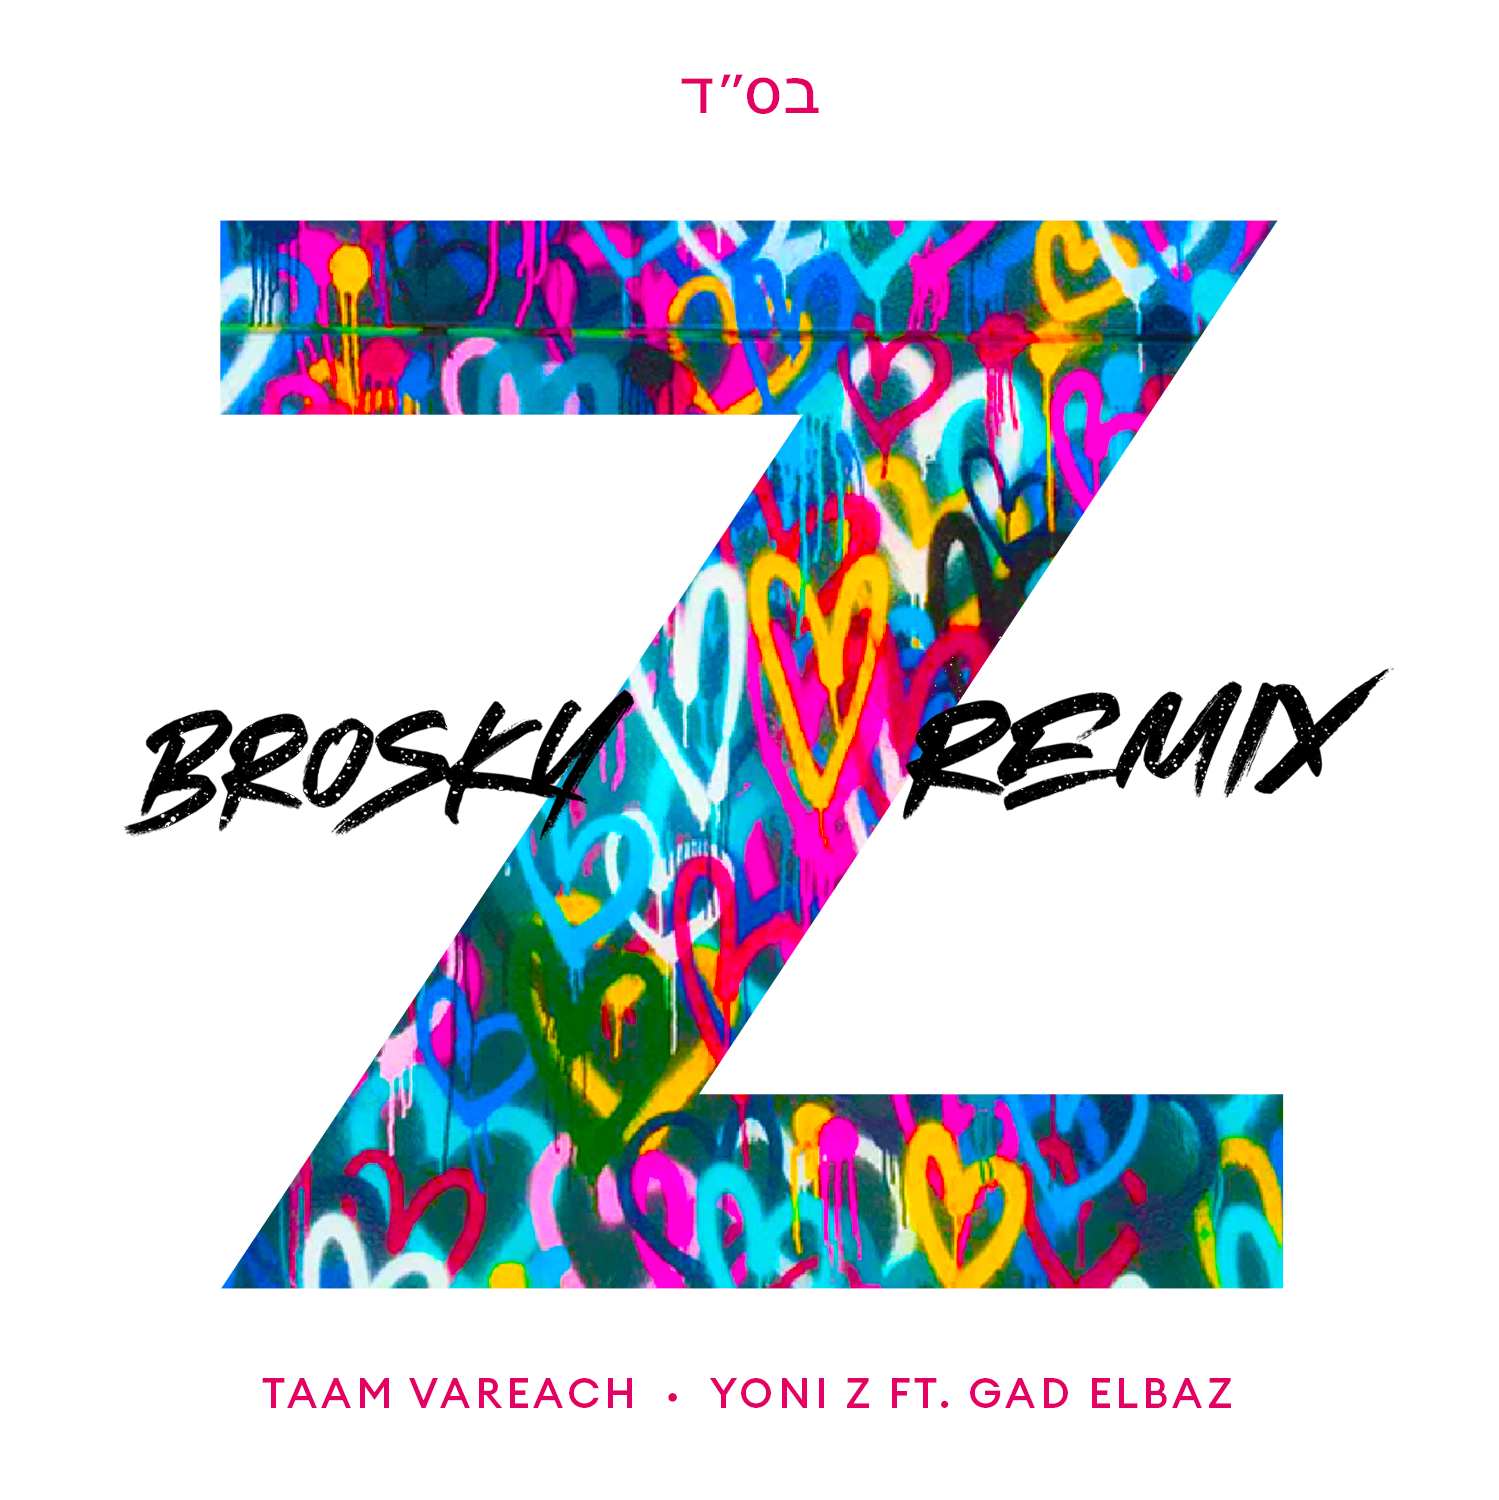 Yoni Z - Taam Vareach (Brosky Remix)